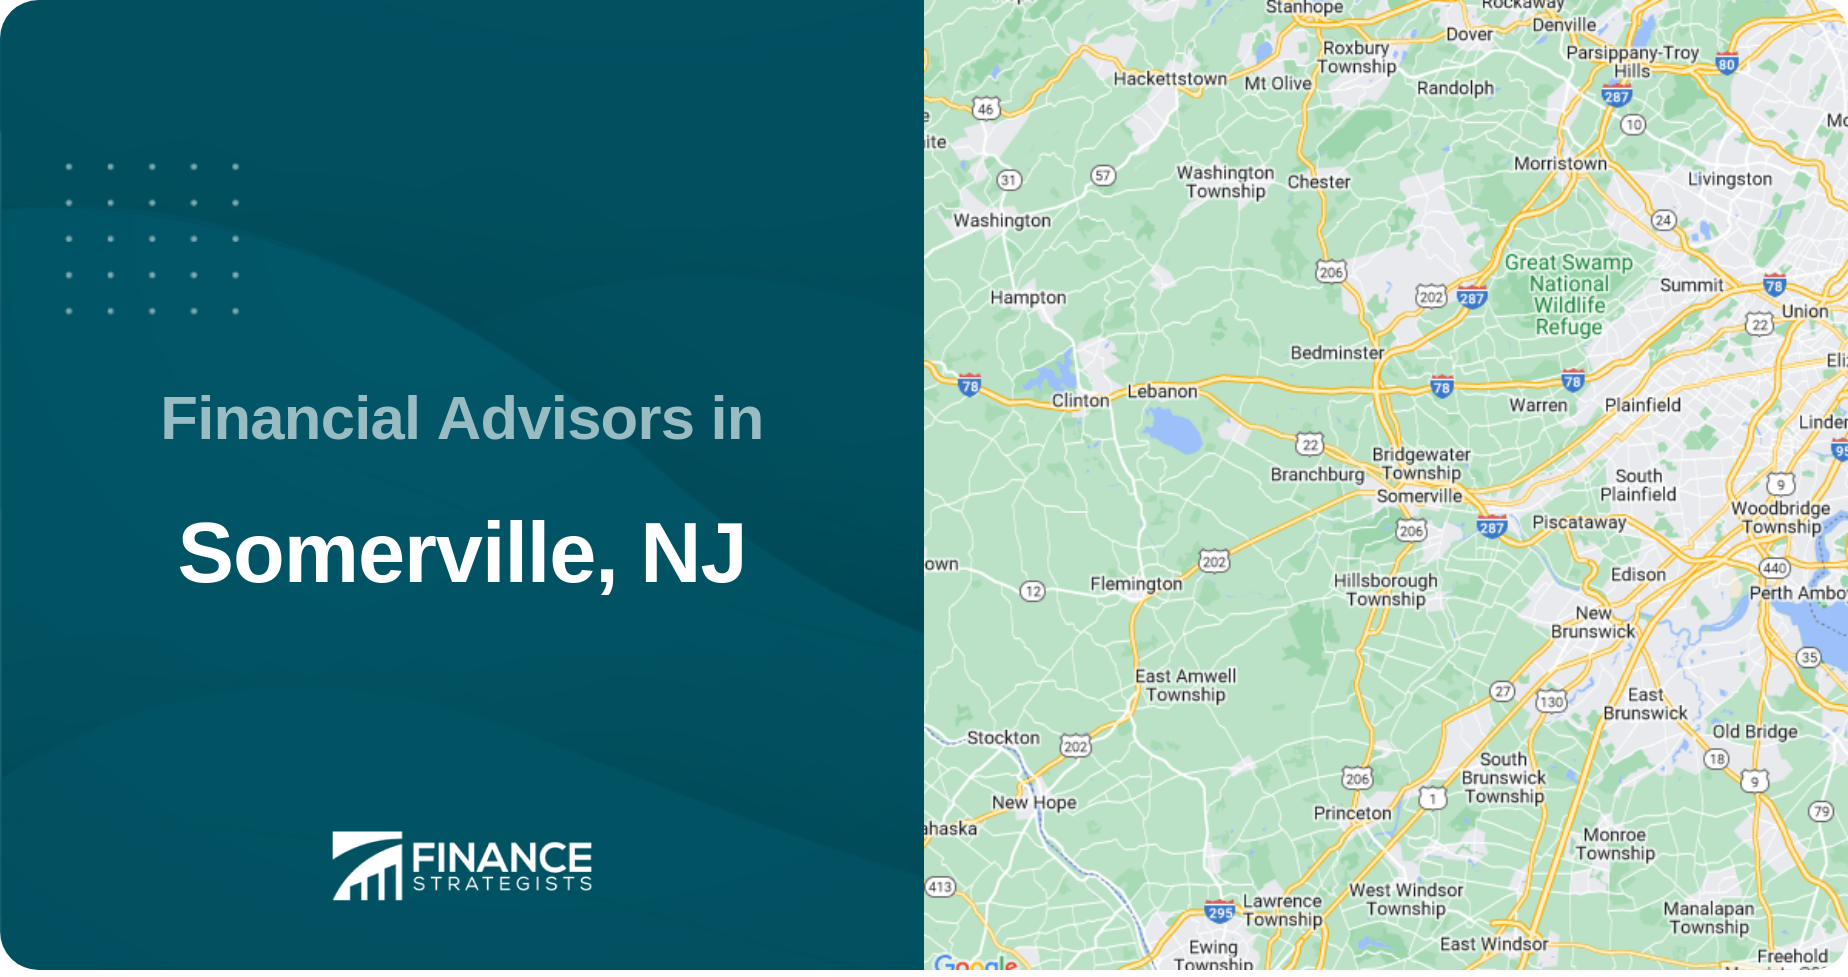 Financial Advisors in Somerville, NJ